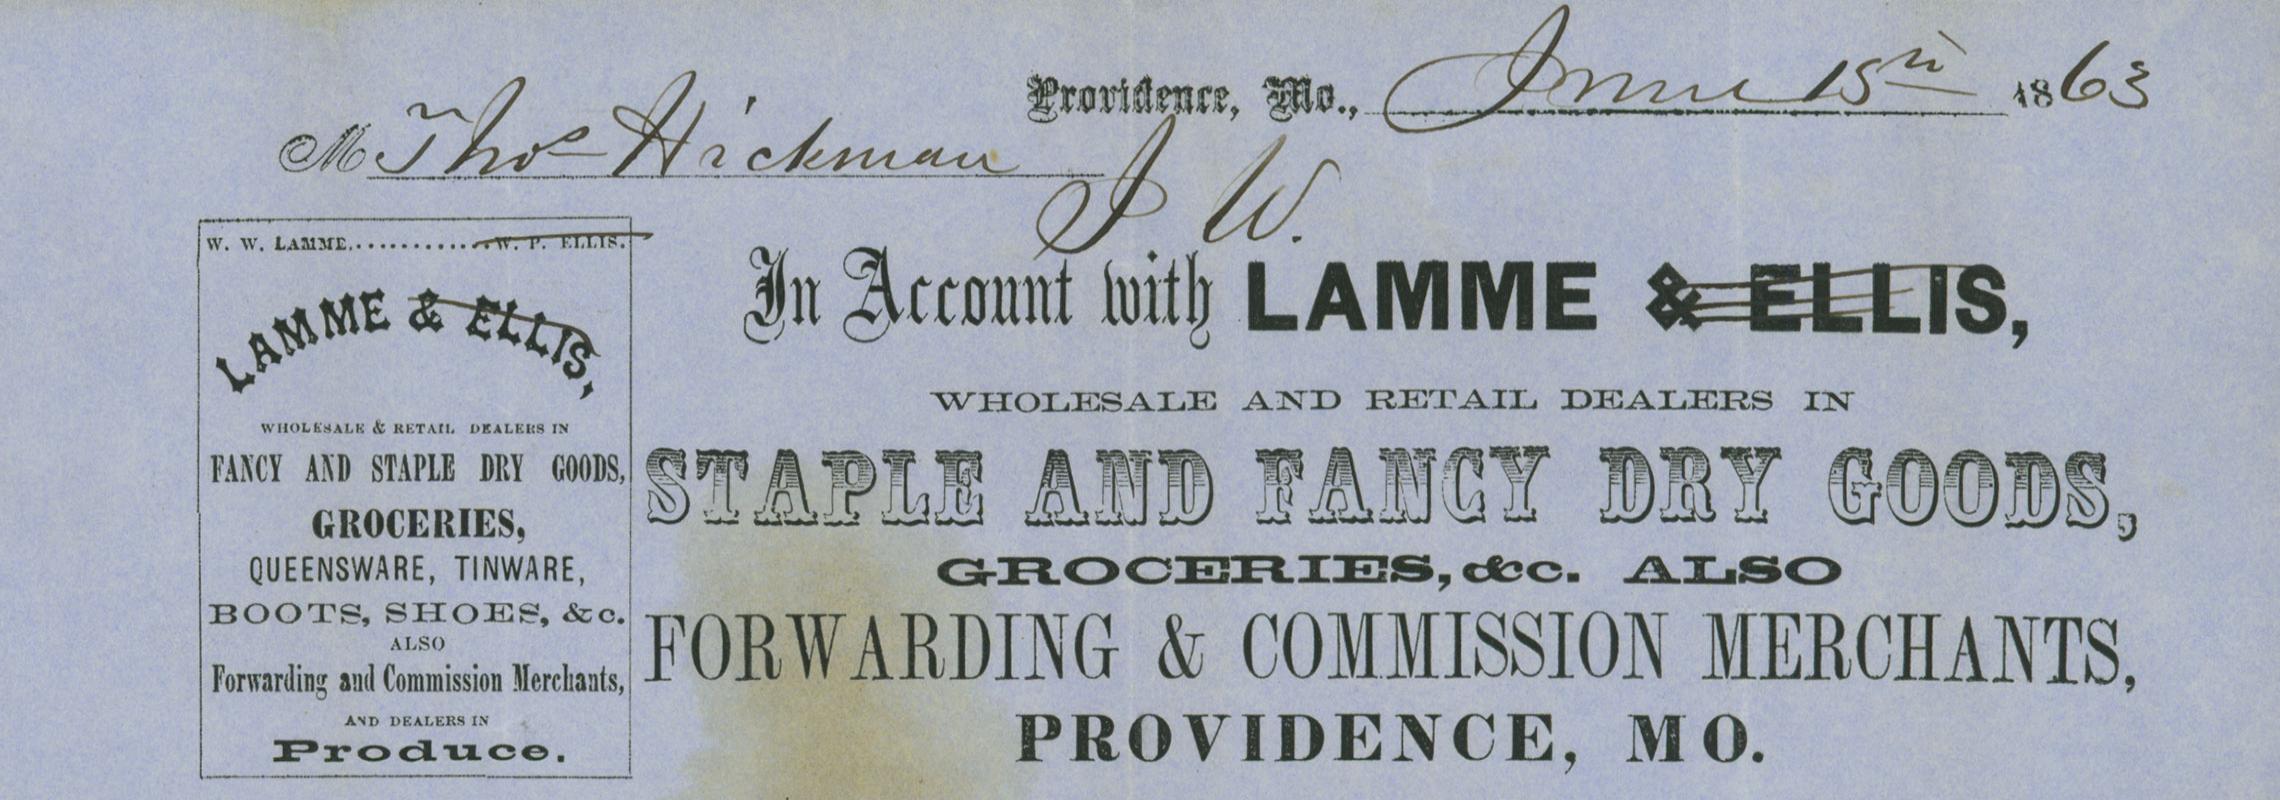 Lamme receipt 1863, C1009 f.20